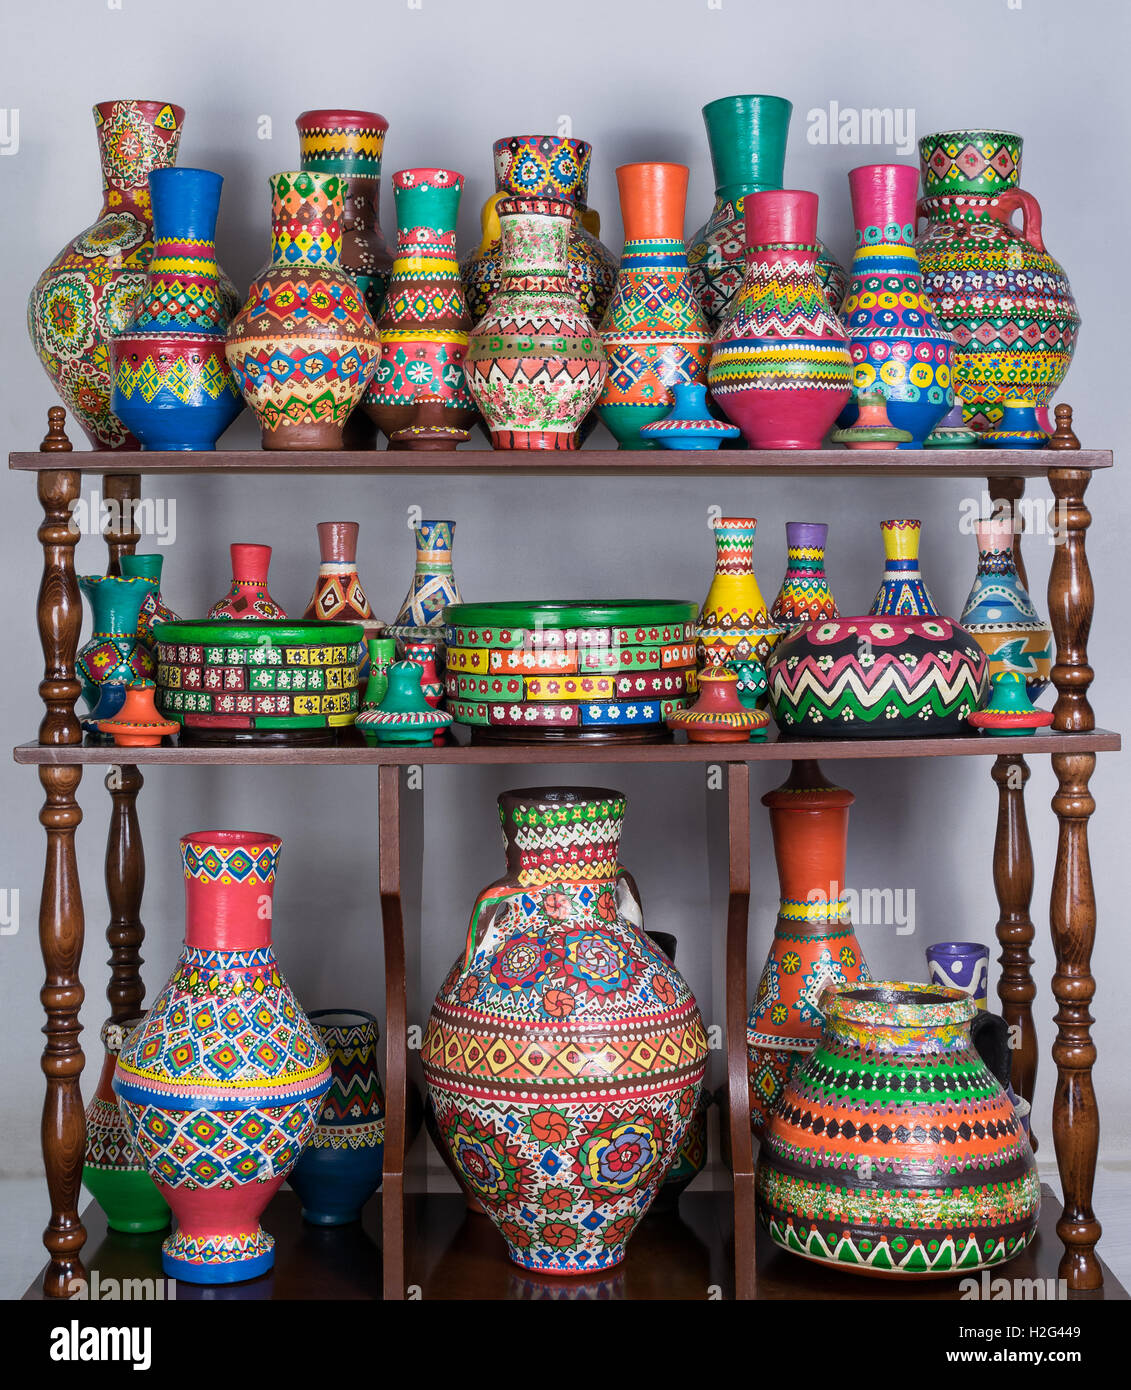 Gruppe von bunt bemalte Keramik Vasen in Holz Regale über weiße Wand  gestapelt Stockfotografie - Alamy